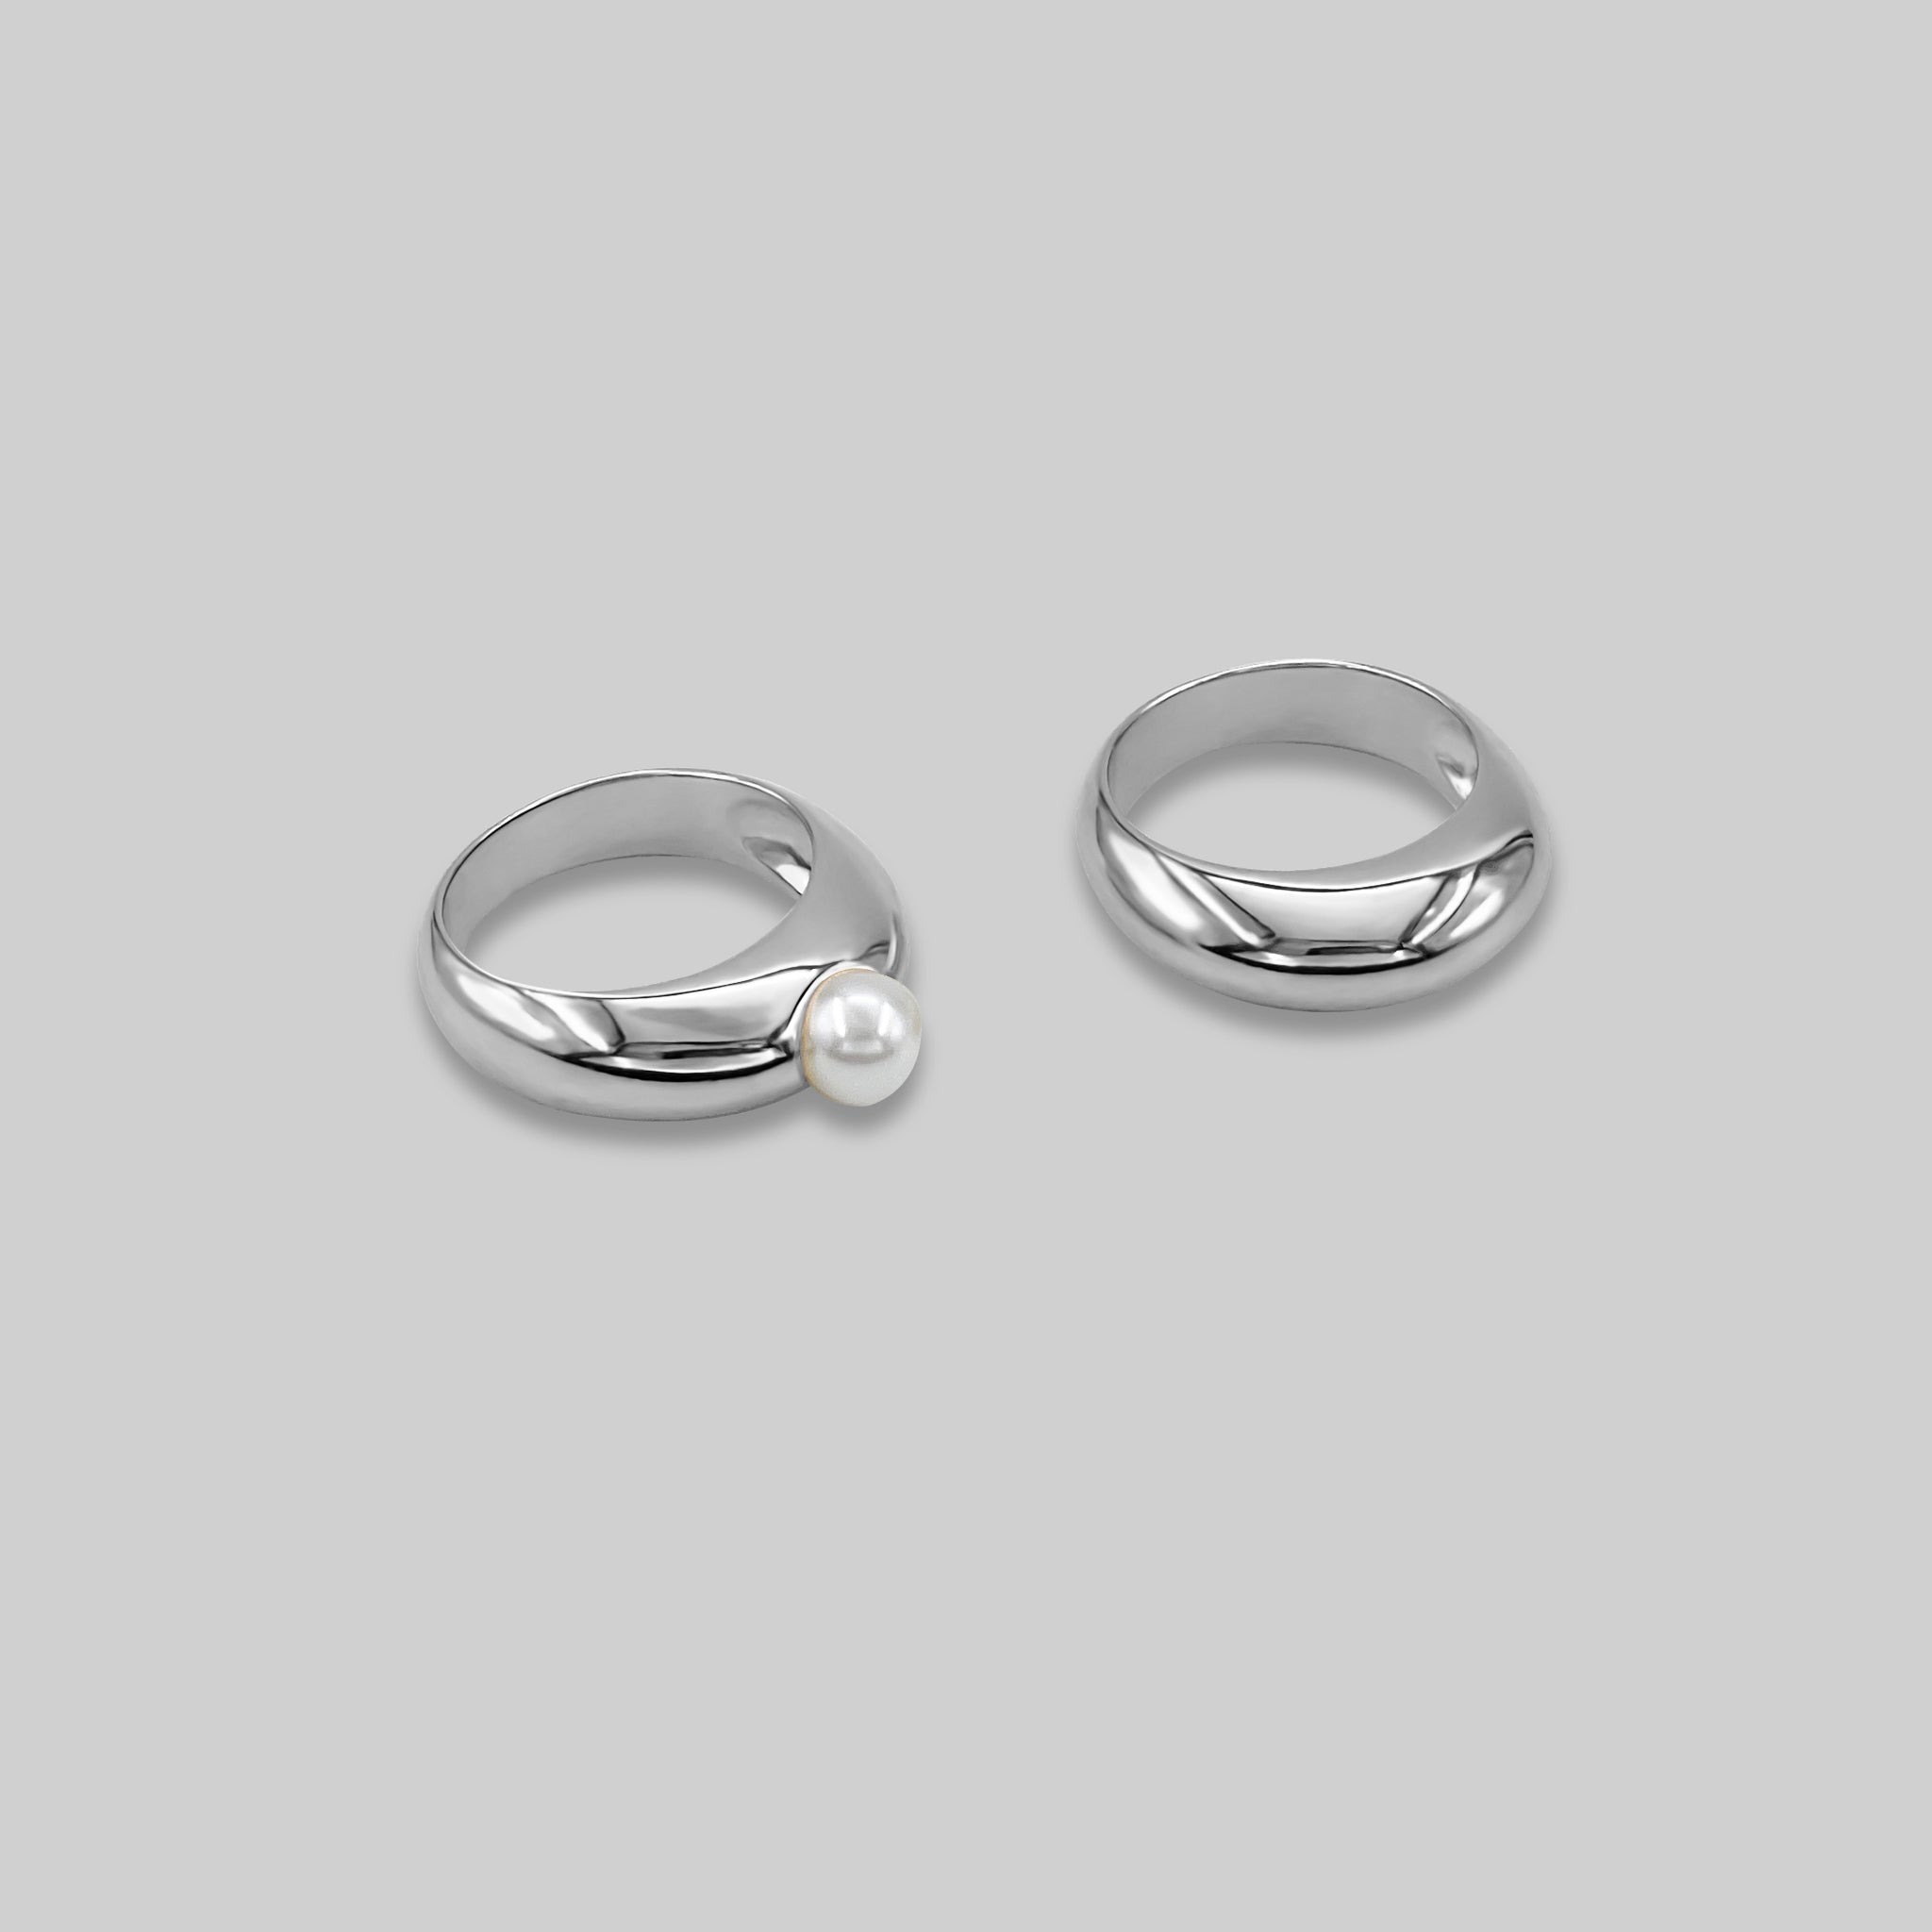 Buy Divya Shakti 9.25-9.50 Ratti Pearl Moti Gemstone Silver Adjustable Ring  for Men & Women at Amazon.in